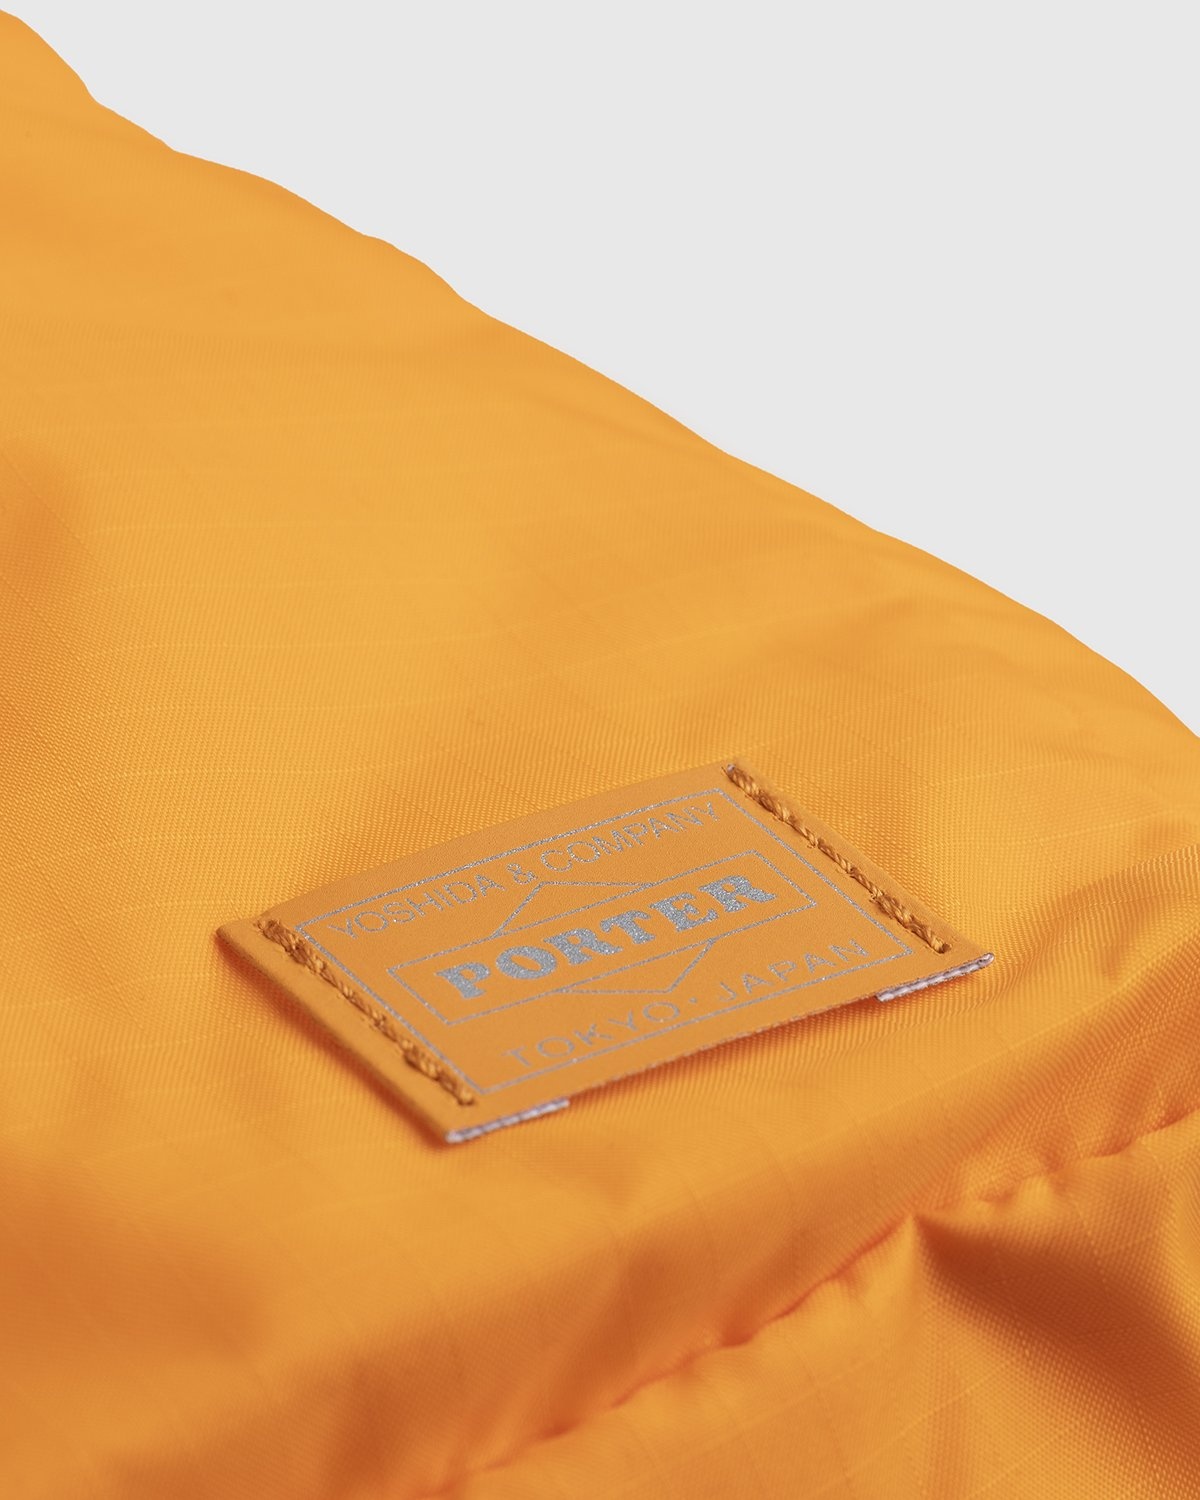 Porter-Yoshida & Co. – Flex 2-Way Duffle Bag Orange - Duffle & Top Handle Bags - Orange - Image 7